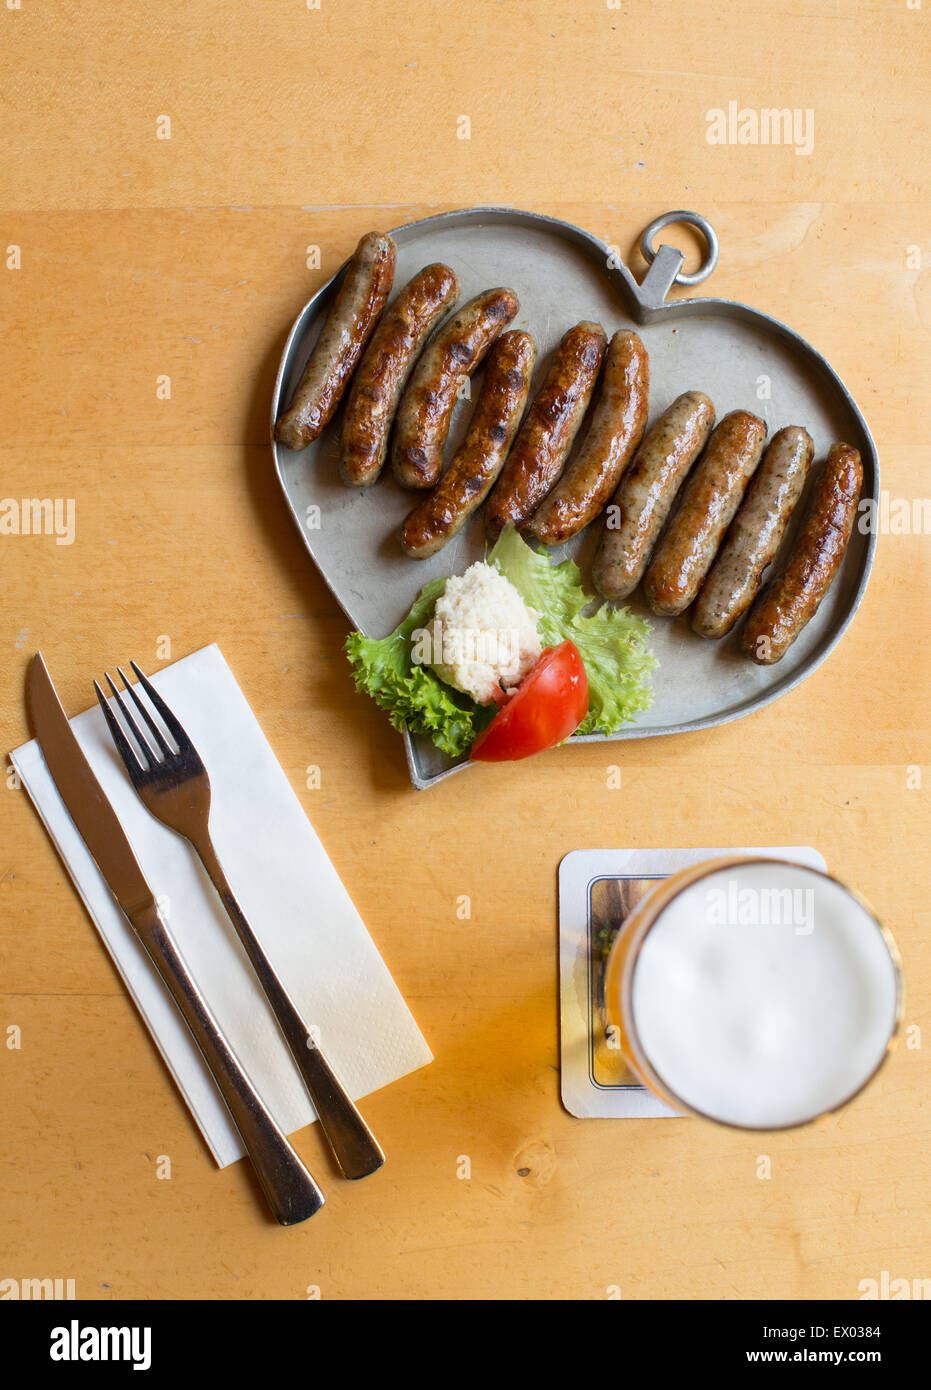 Table avec des saucisses sur le plateau en forme de coeur, Nuremberg, Allemagne Banque D'Images